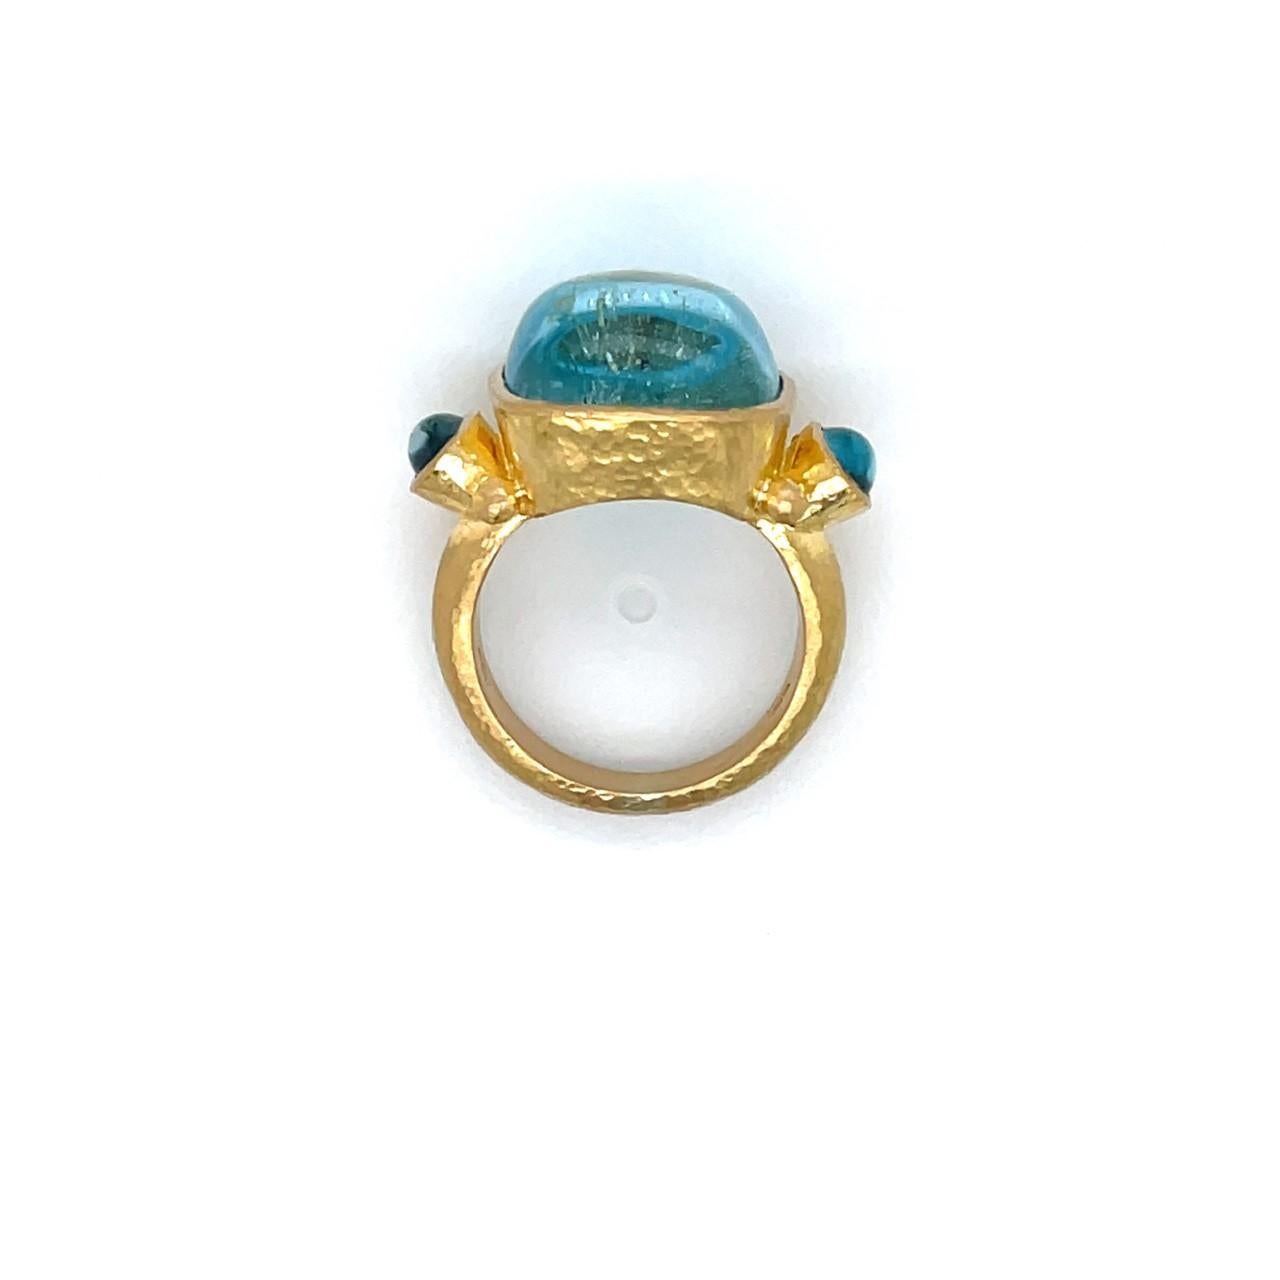 Elizabeth Locke 19k Yellow Gold Three Stone Ring with Cabochon Cut Aquamarines 2